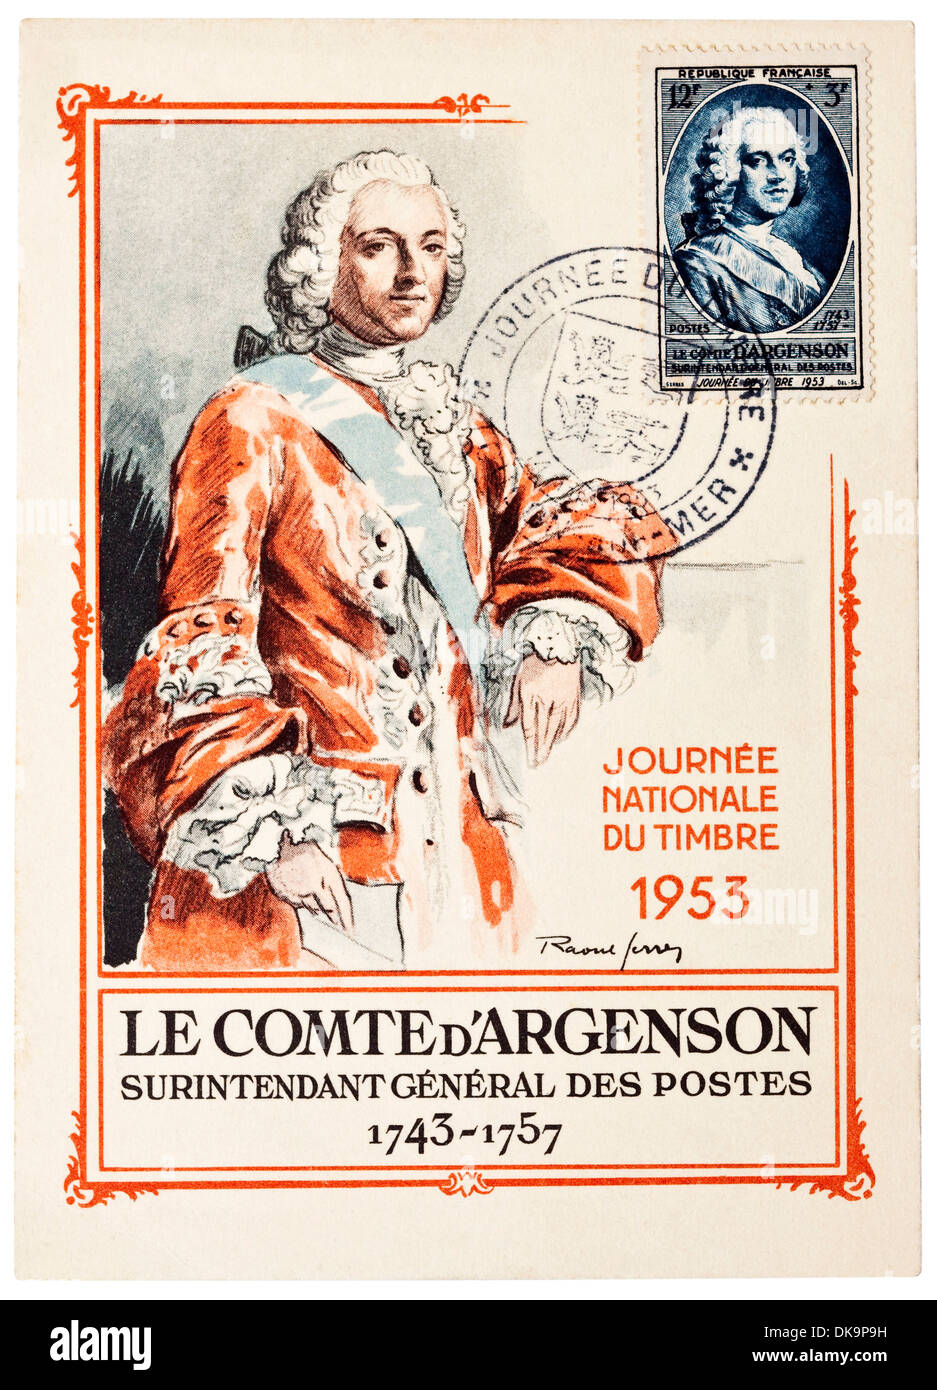 1953 French postcard depicting Le Comte d'Argenson, 1743-1757 - "Journée du Timbre" (Stamp Day). Stock Photo